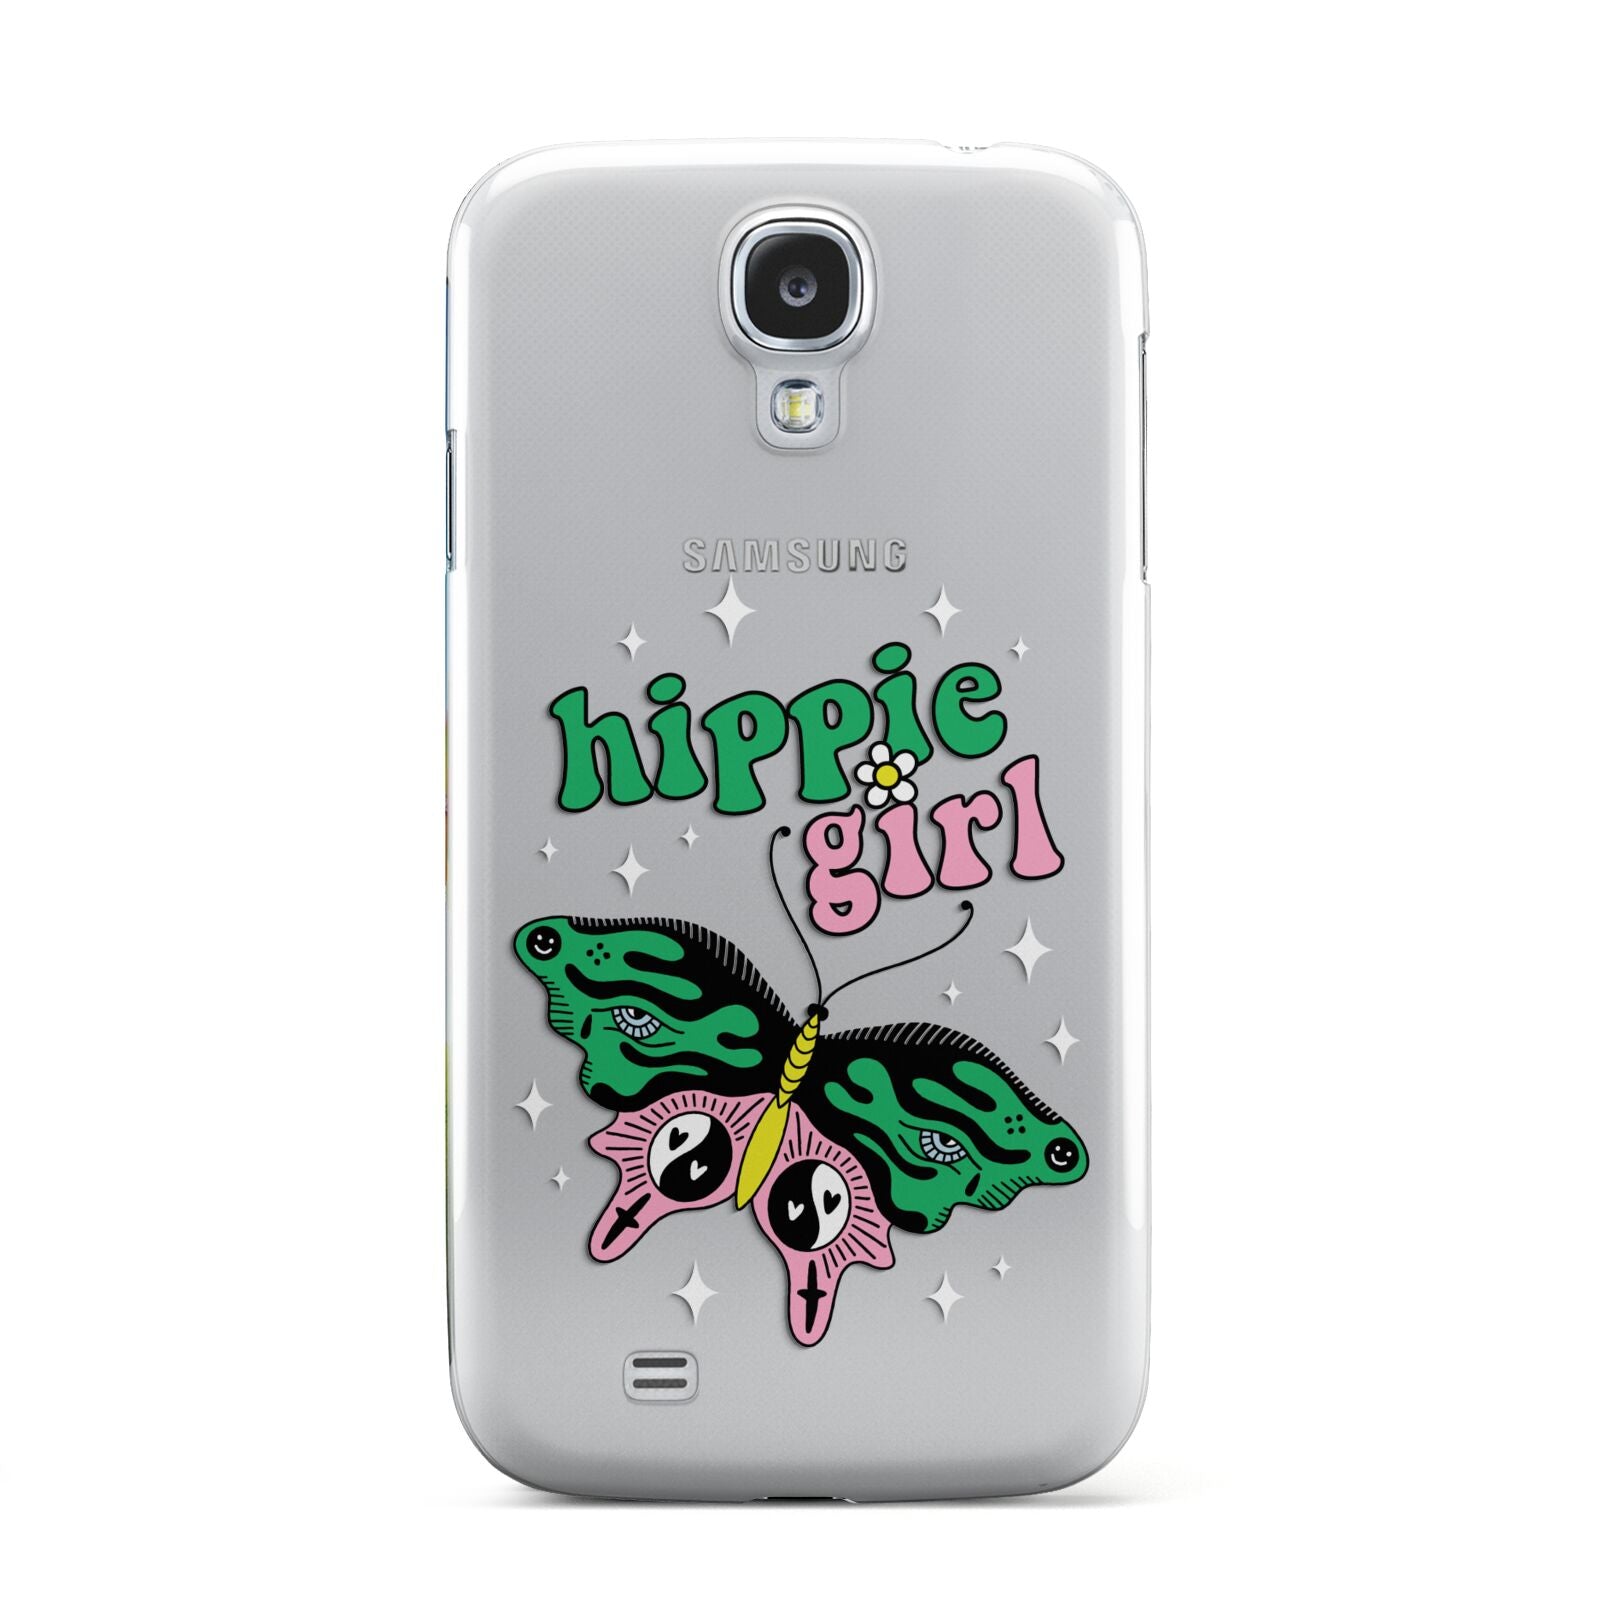 Hippie Girl Samsung Galaxy S4 Case